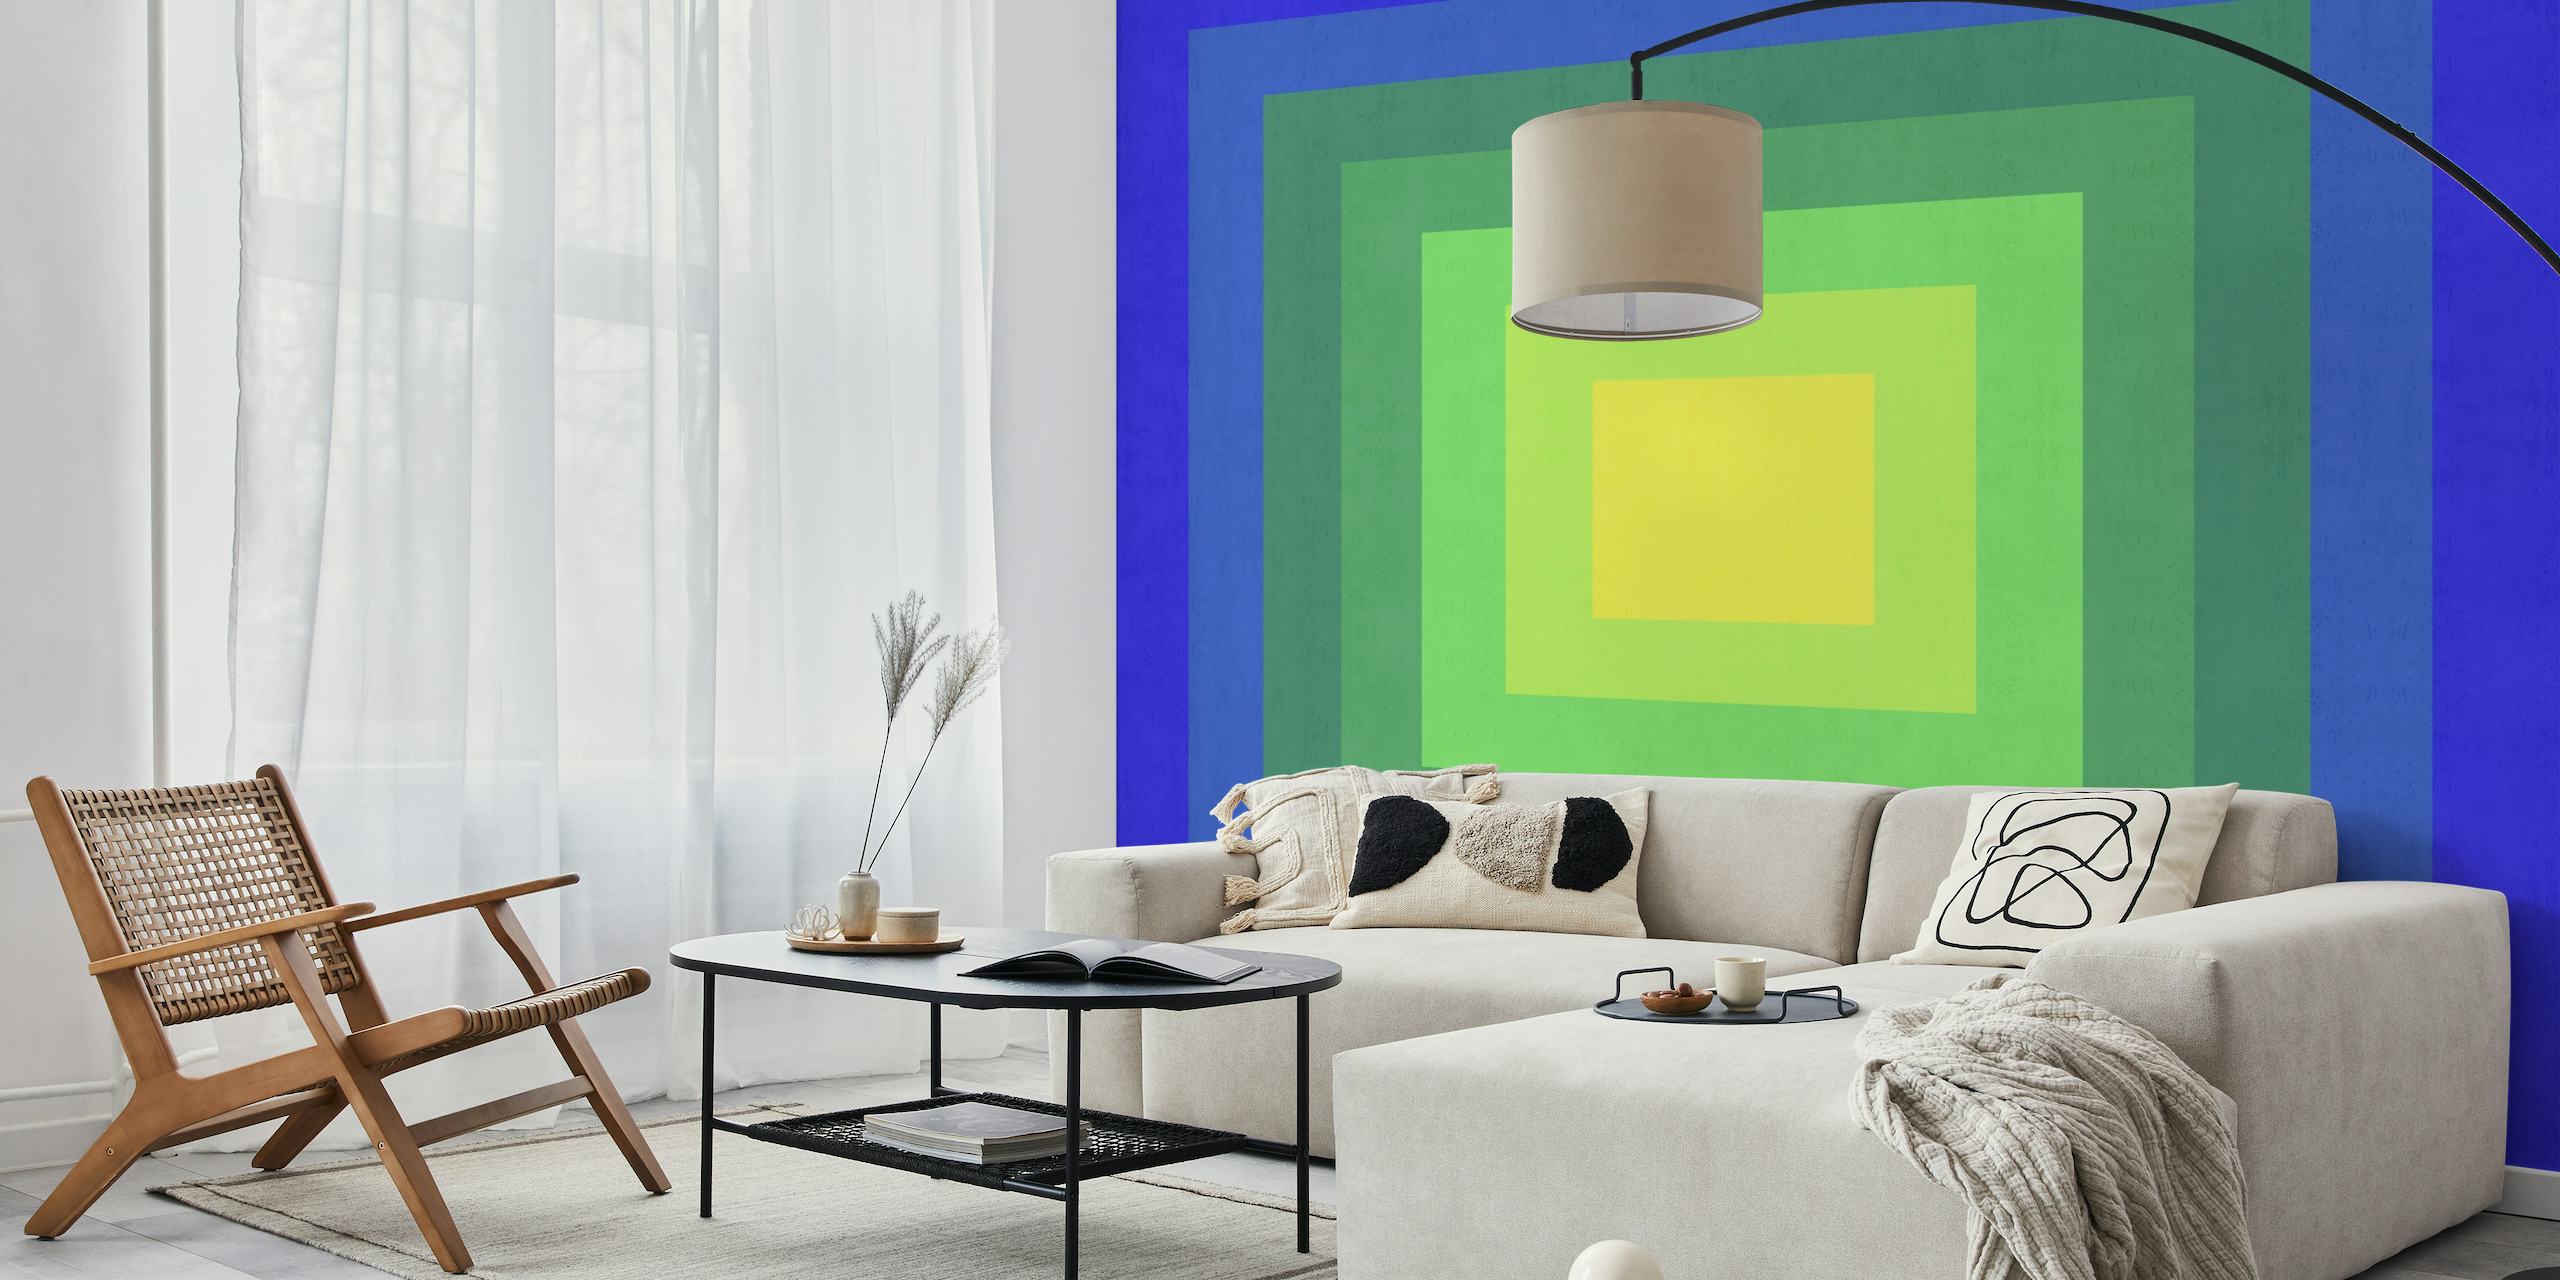 Fototapete eines abstrakten Tunneldesigns mit Farbverlauf und Quadraten in Blau- bis Gelbtönen.